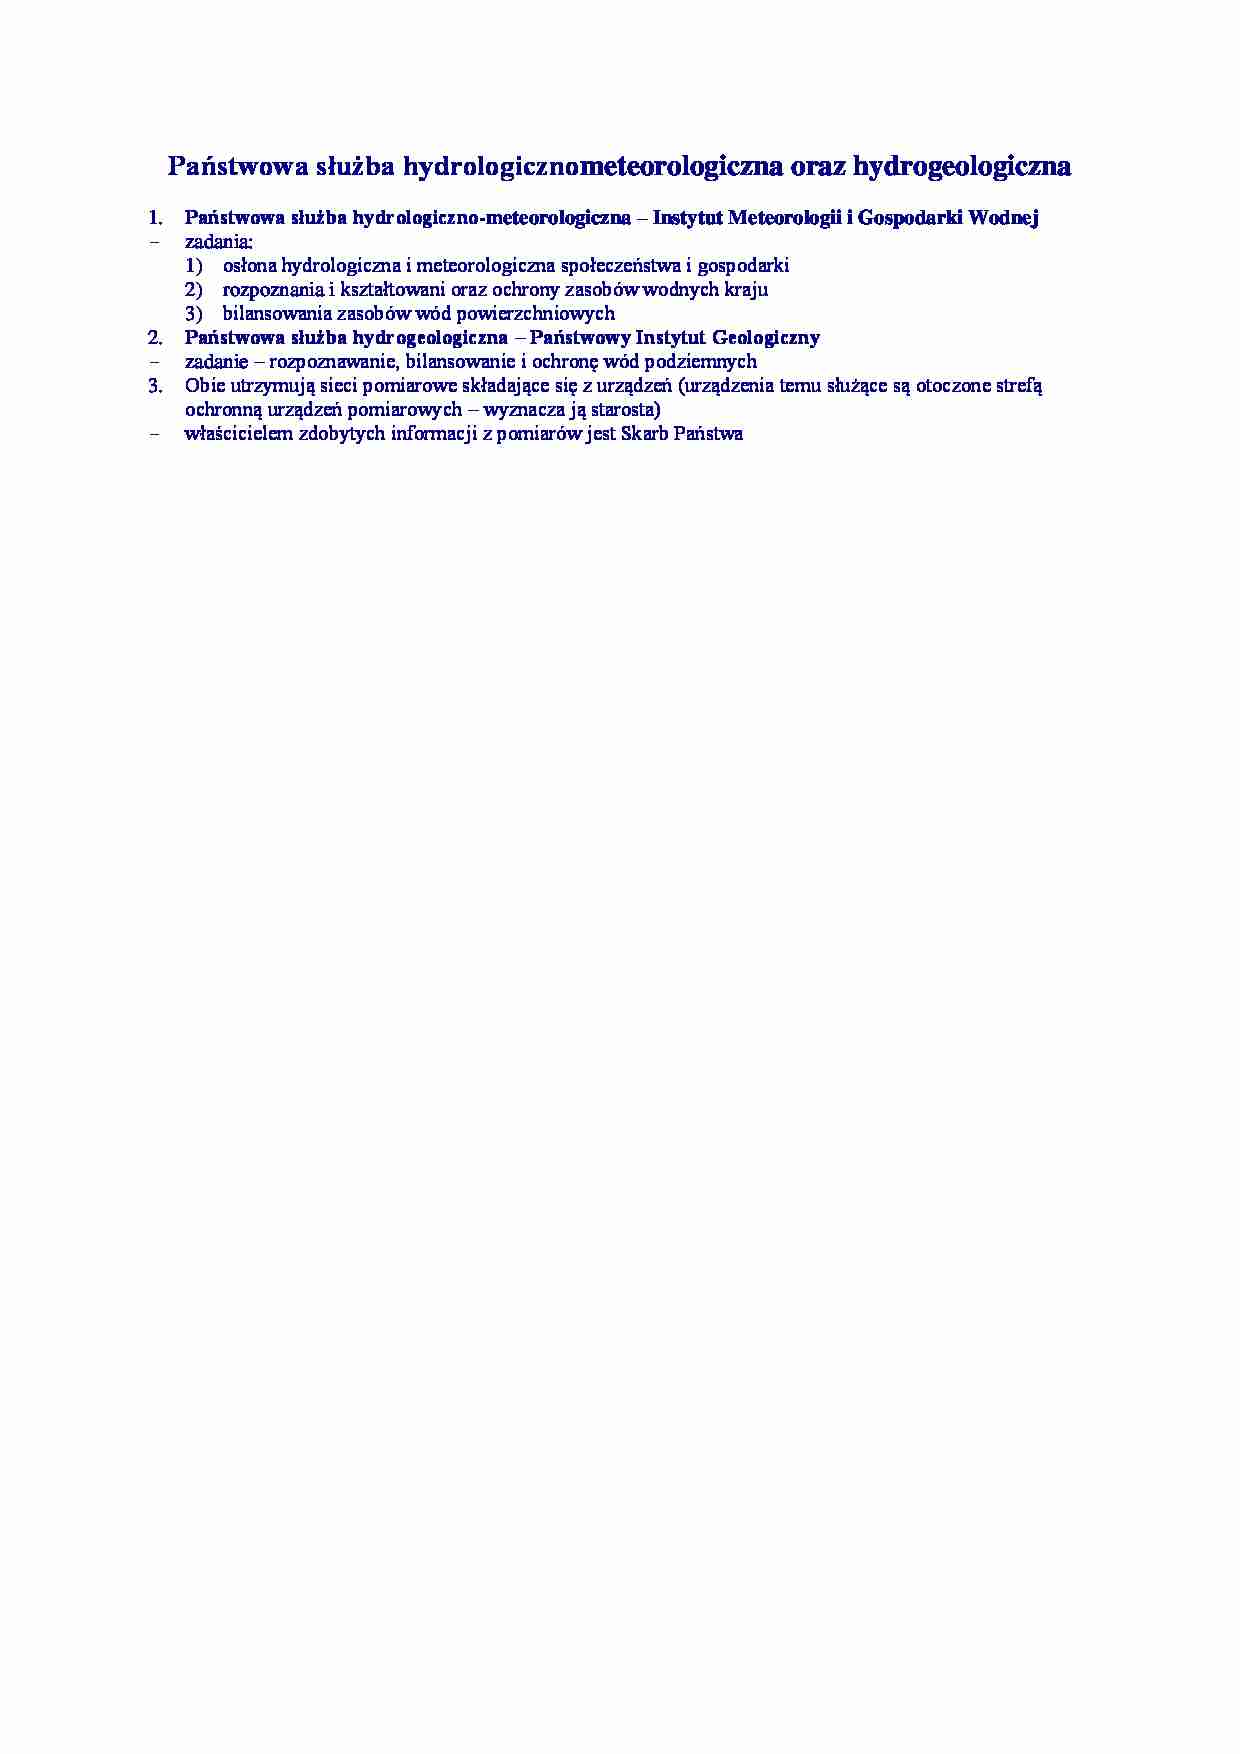 Państwowa służba hydrologicznometeorologiczna - omówienie - strona 1